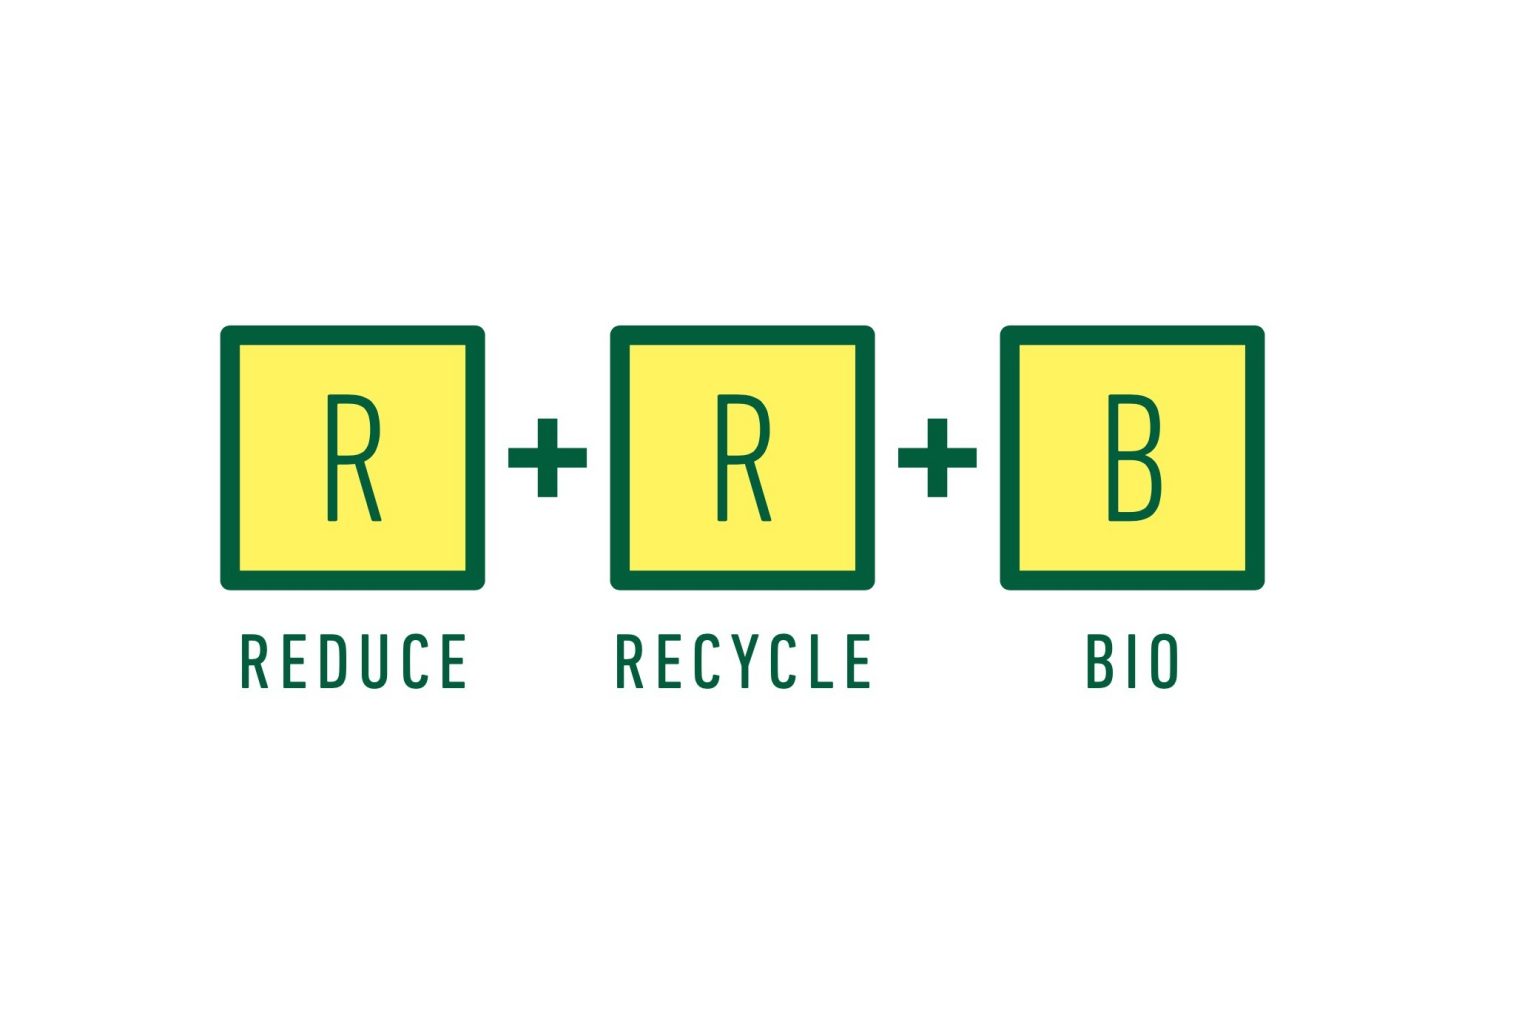 軽量化し、使用する原料を減らすリデュース、ペットボトルからペットボトルへ100%循環させるリサイクルに加え、新しく使用する原料を植物由来にすることを目指すバイオの3要素が〈サントリー〉独自のアイデア。